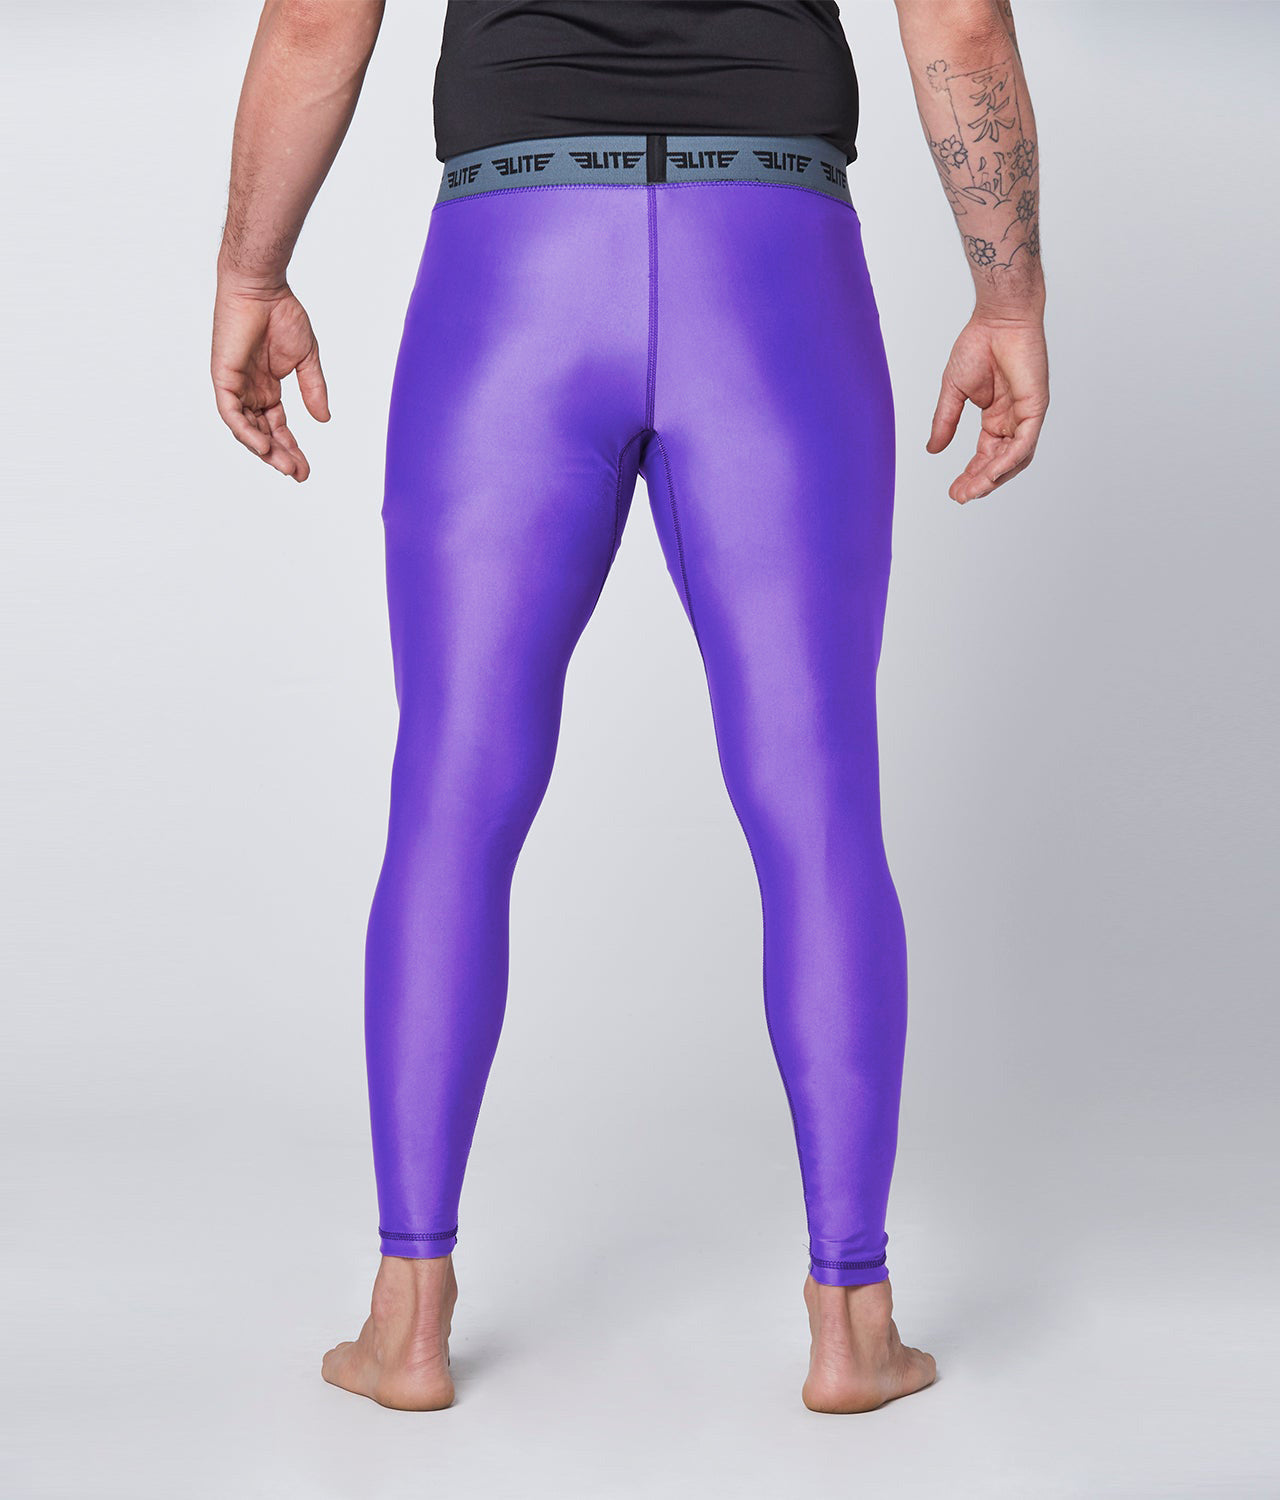 Men's Plain Purple Compression Muay Thai Spat Pants